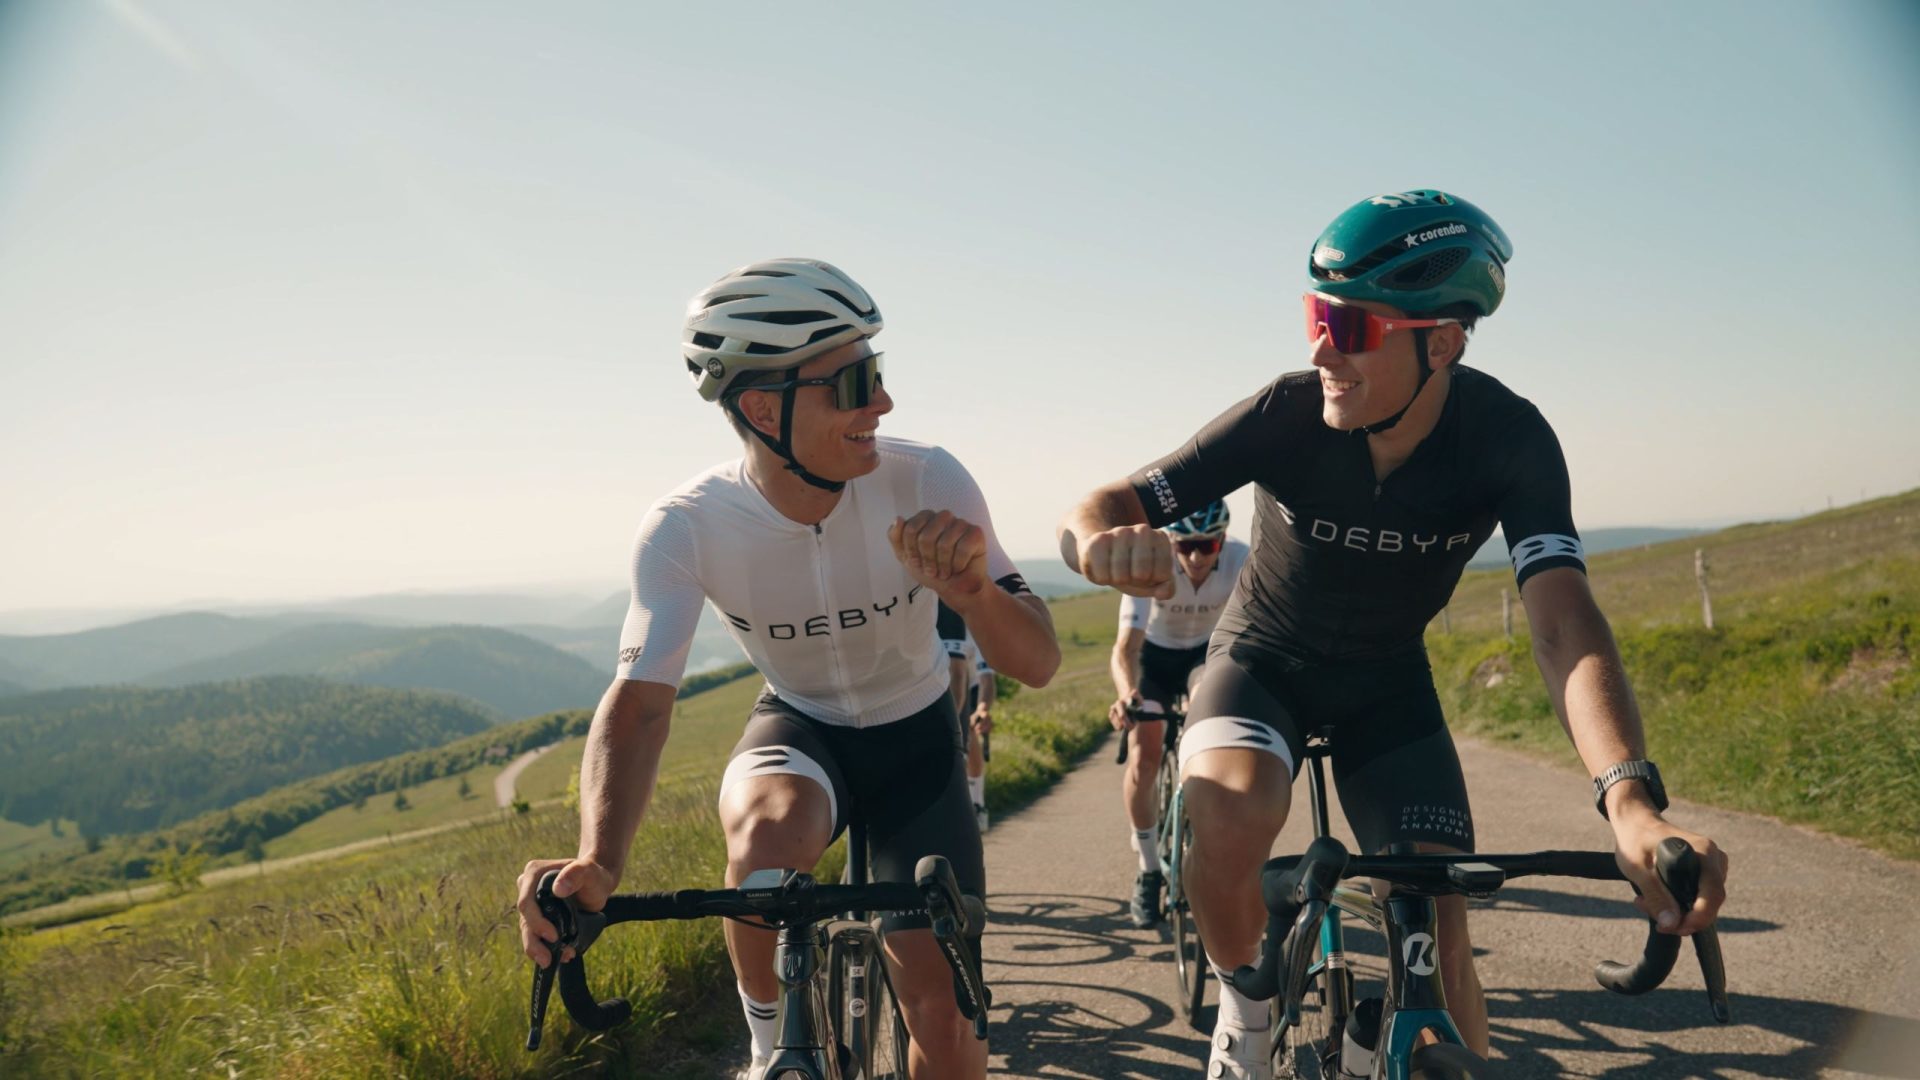 Extrait de la vidéo Debya montrant 2 cyclistes souriants et heureux roulant côte à côte